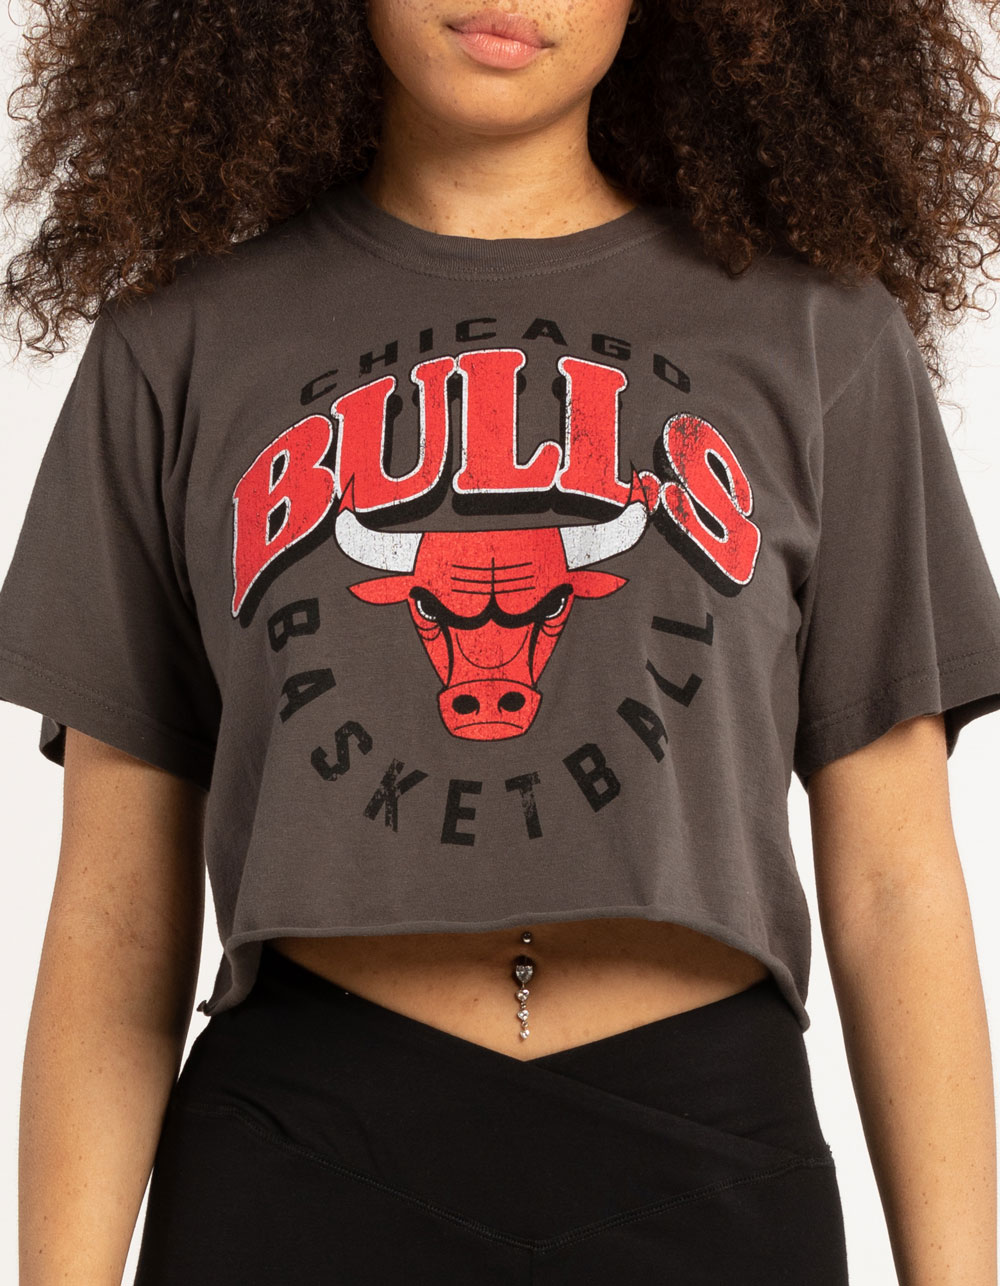 Crop Top Chicago Bulls Licensed Sweatshirt